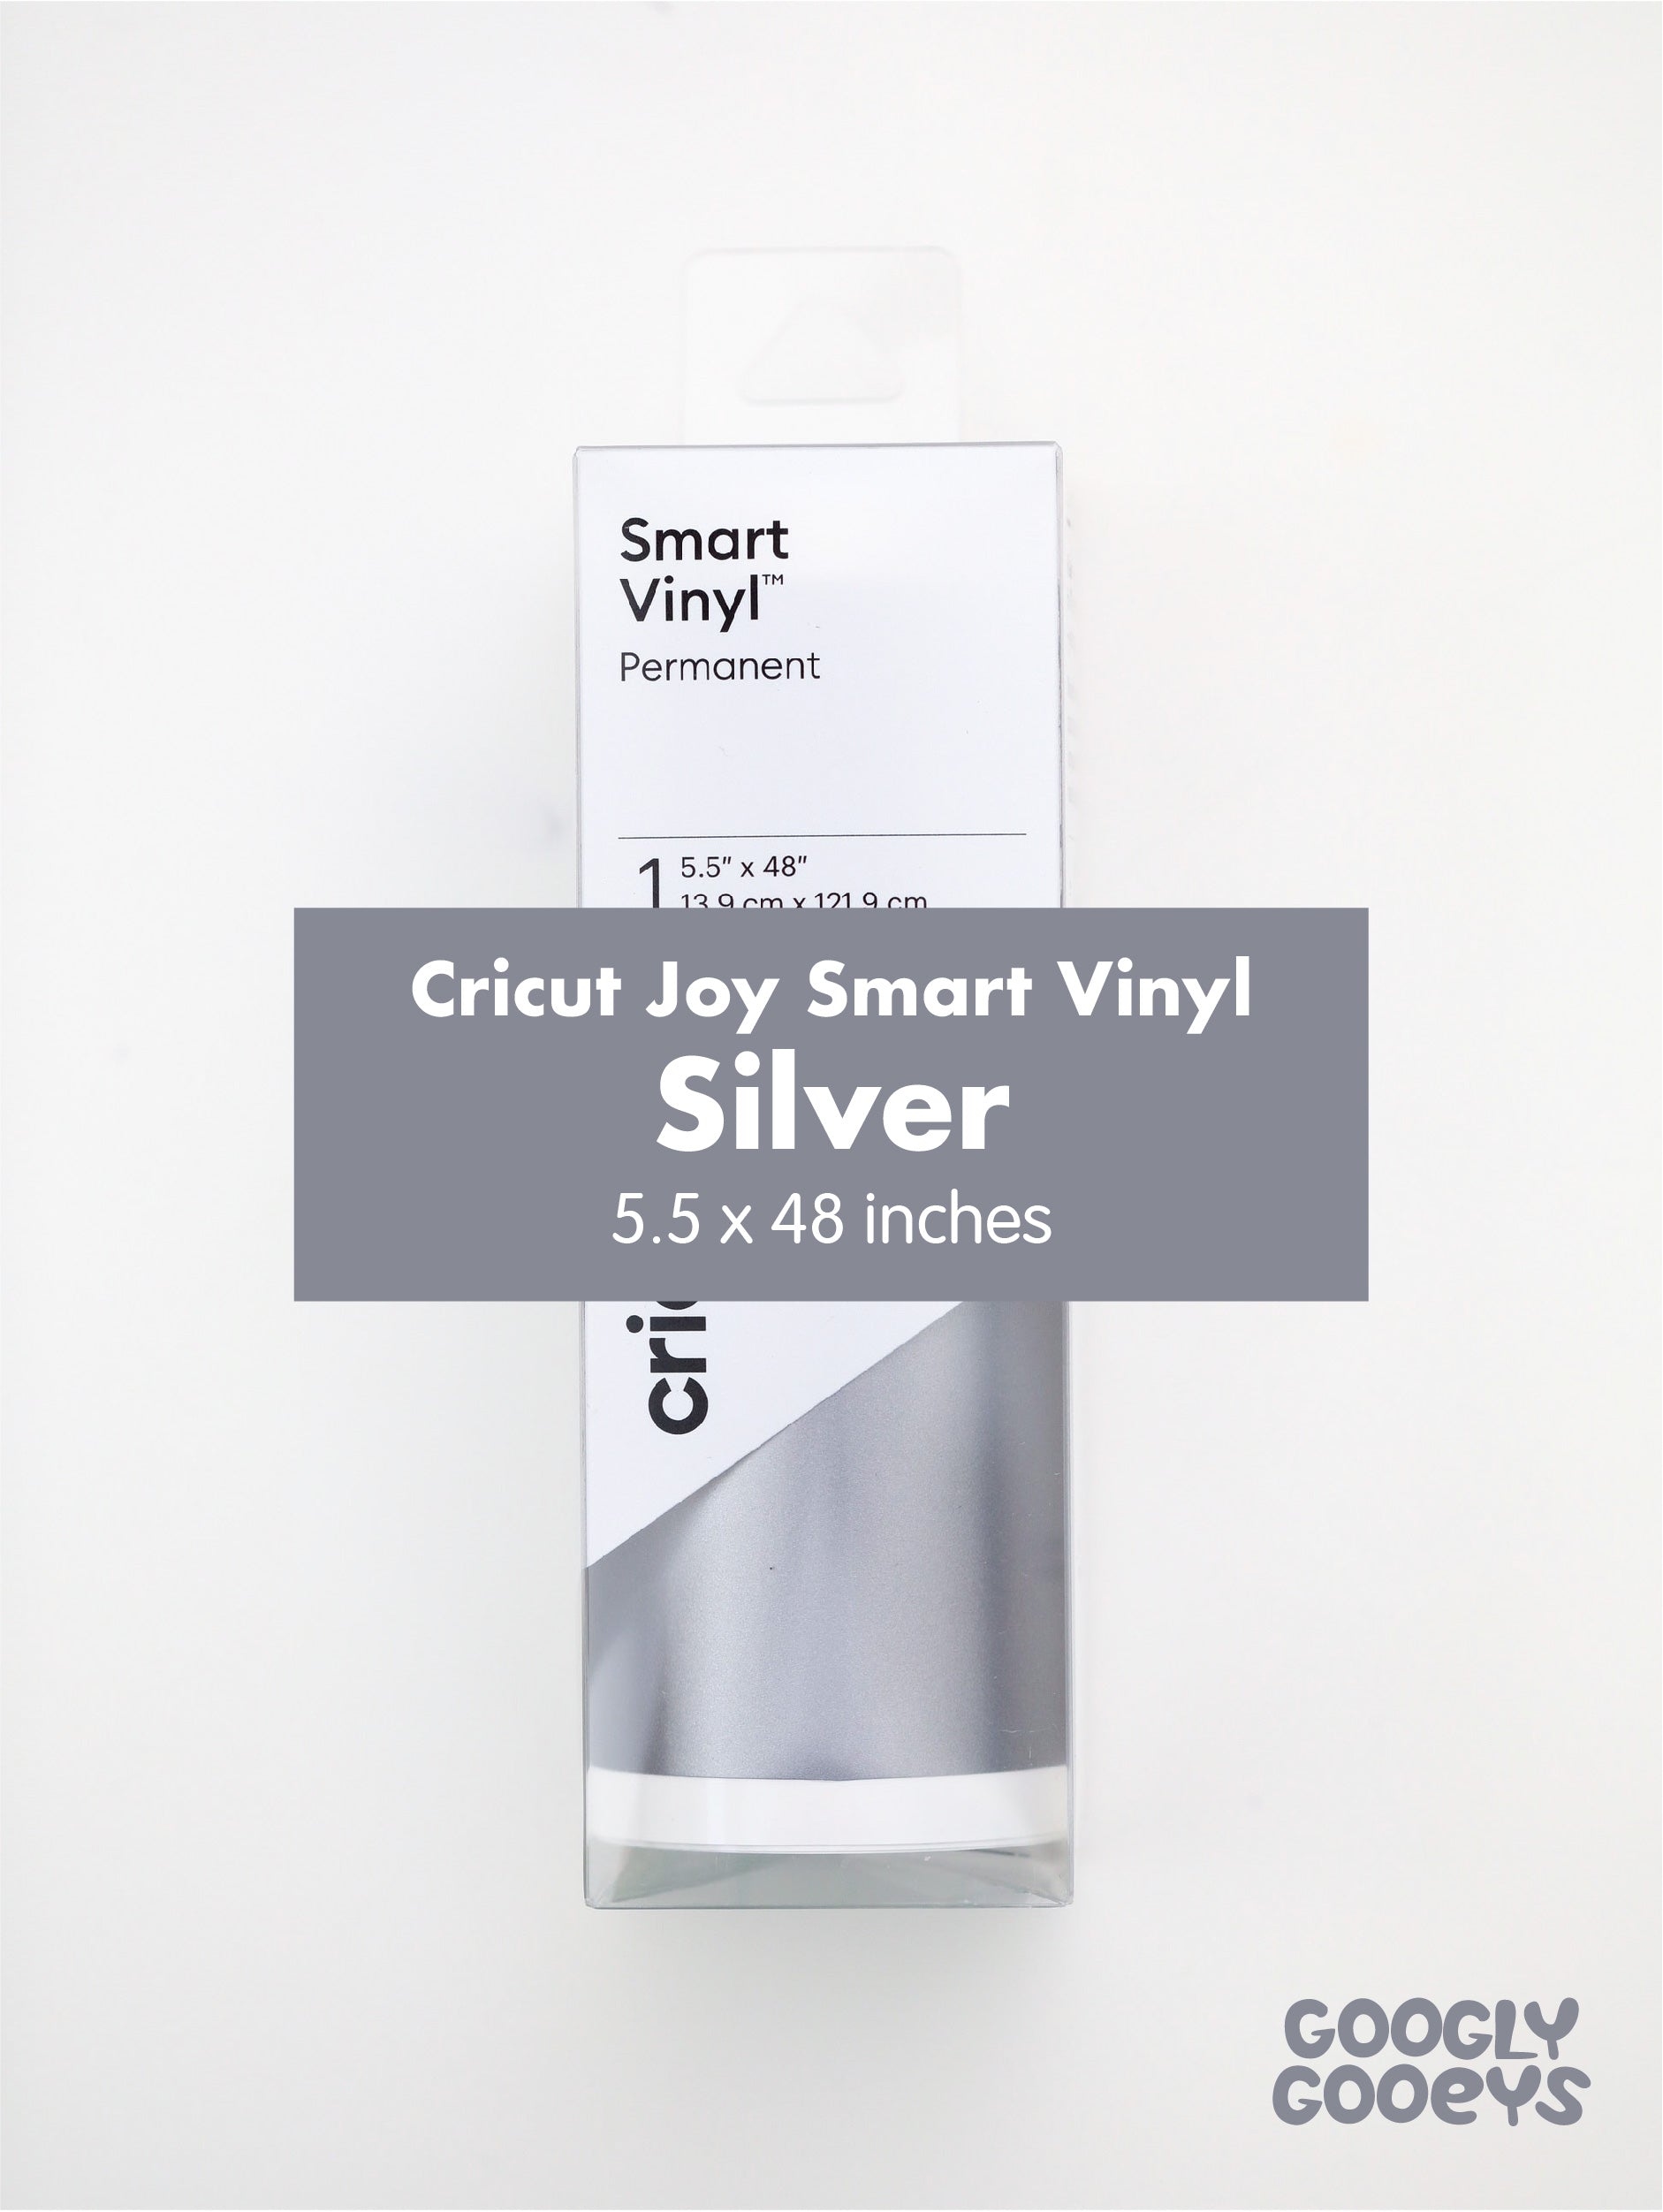 Vinyle Adhésif Permanent Brillant, Smart Vinyl Cricut Joy 13,9 x 121,9 cm